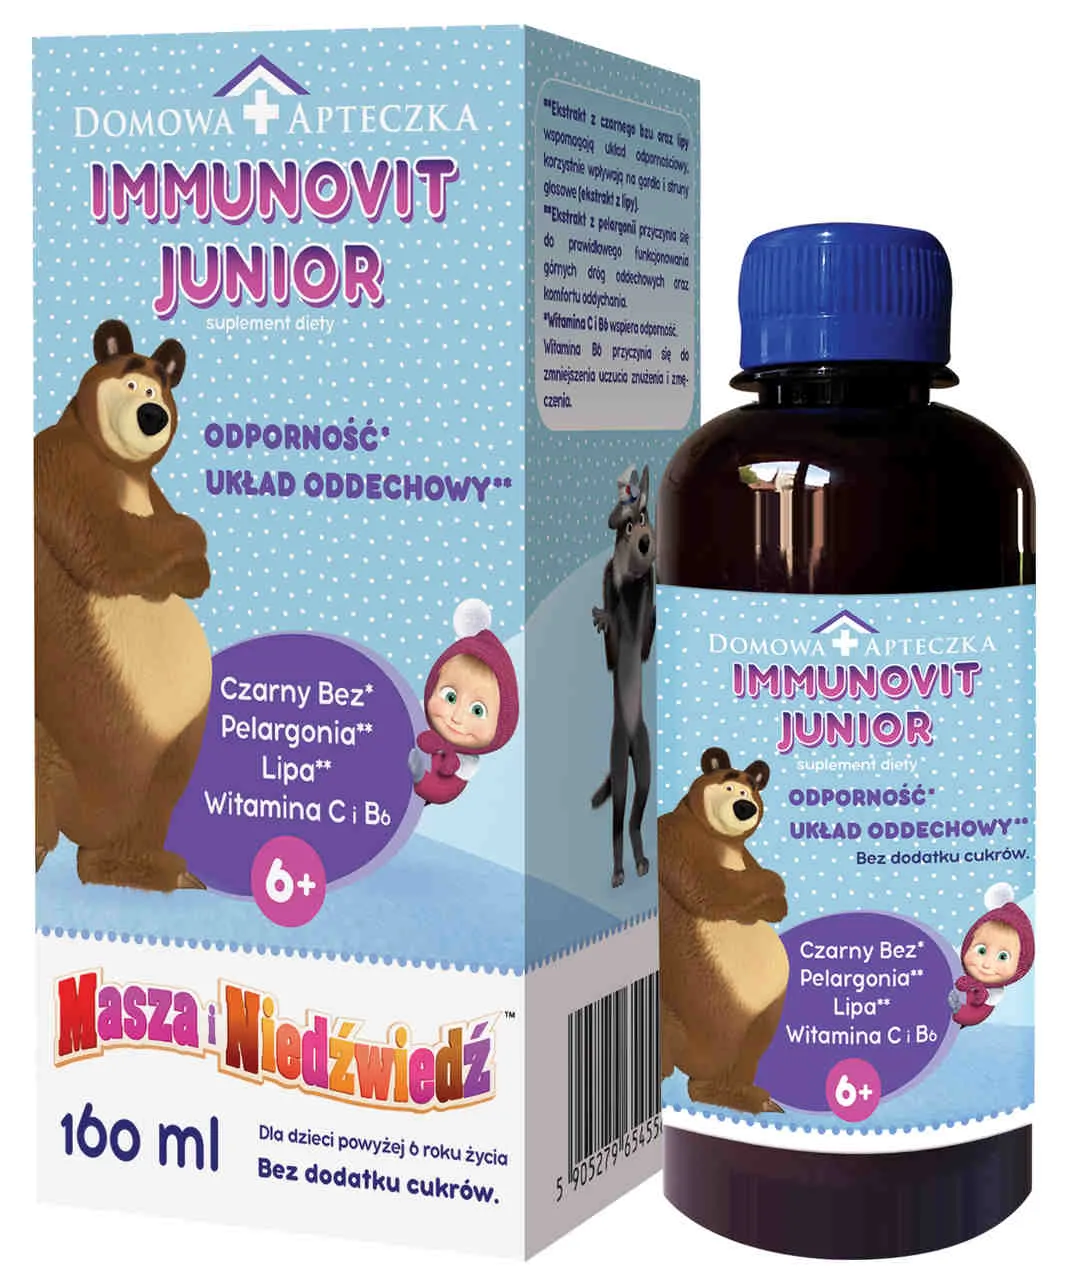 Domowa Apteczka ImmunoVit Junior, suplement diety, 160 ml